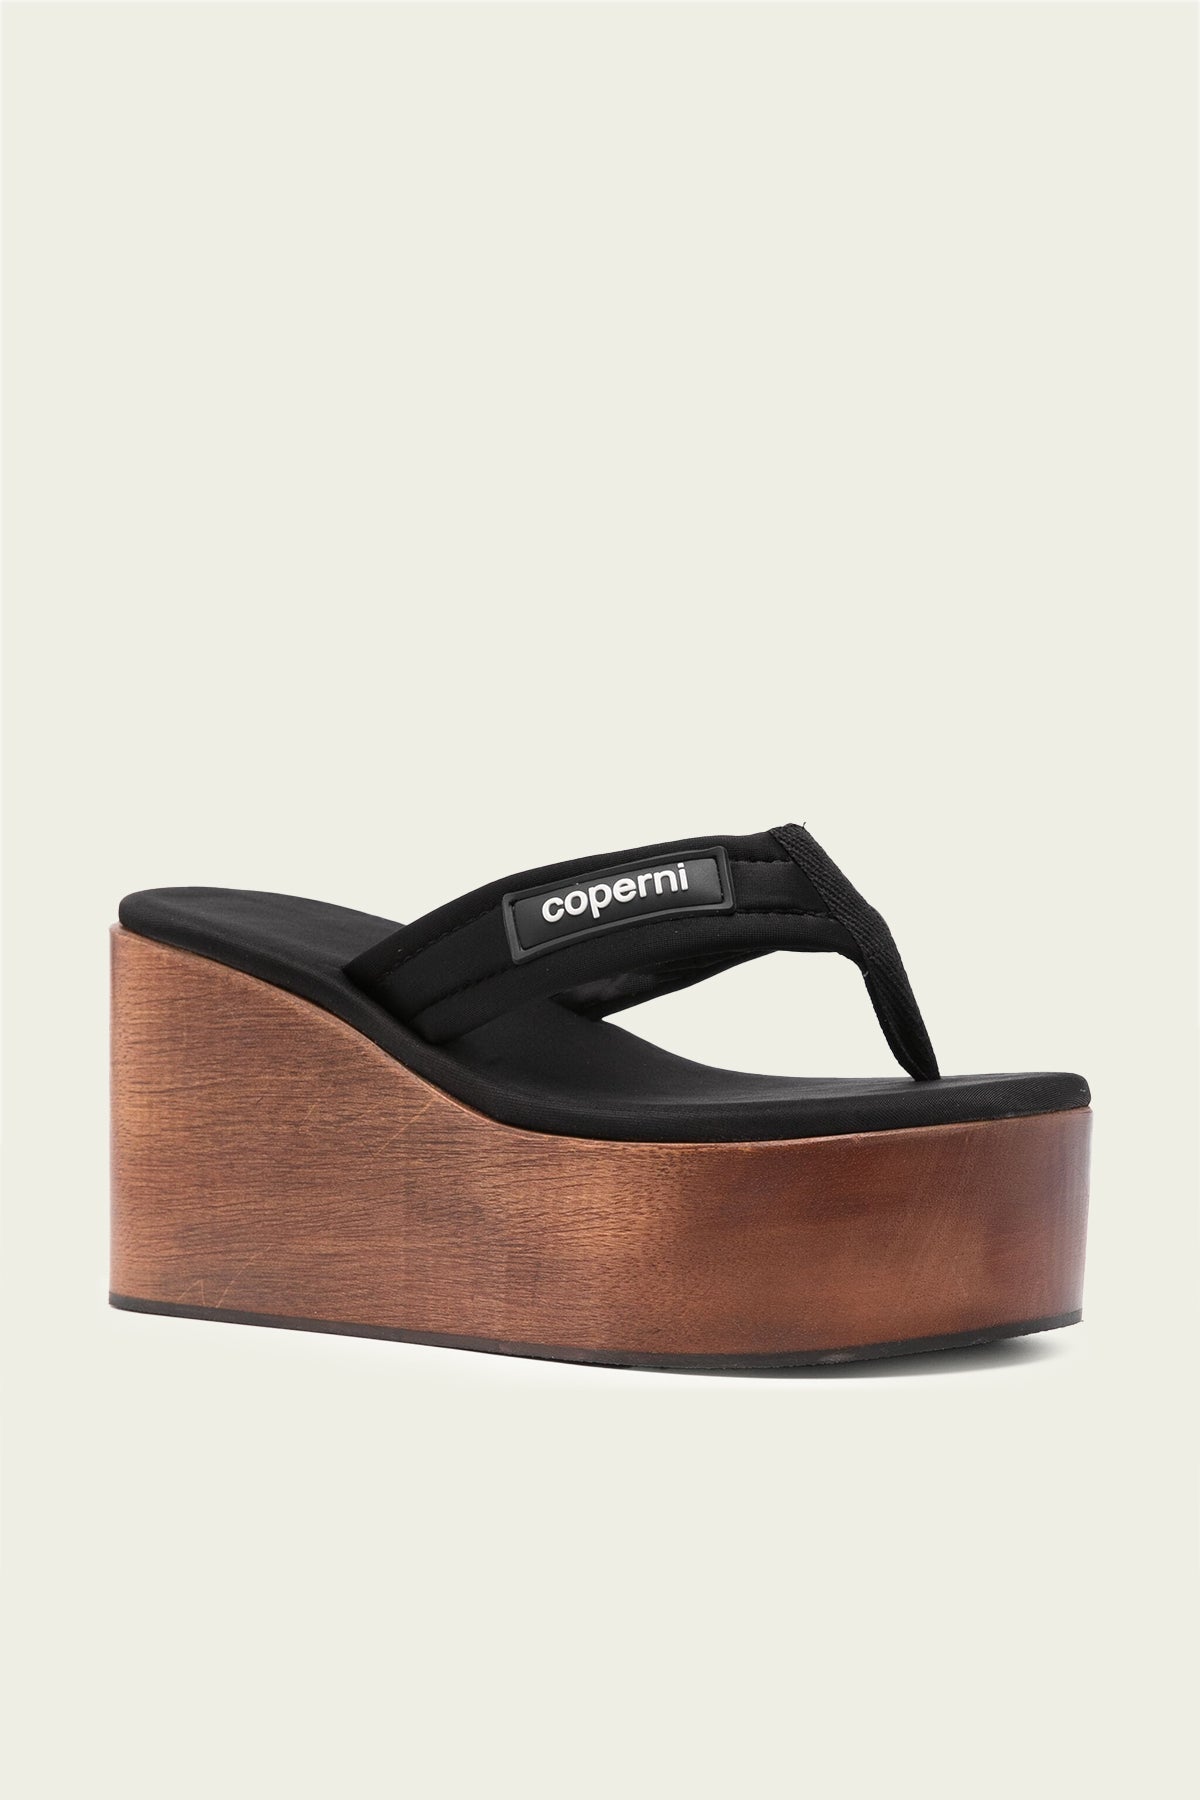 Wooden Branded Wedge Sandal in Black Brown - shop-olivia.com